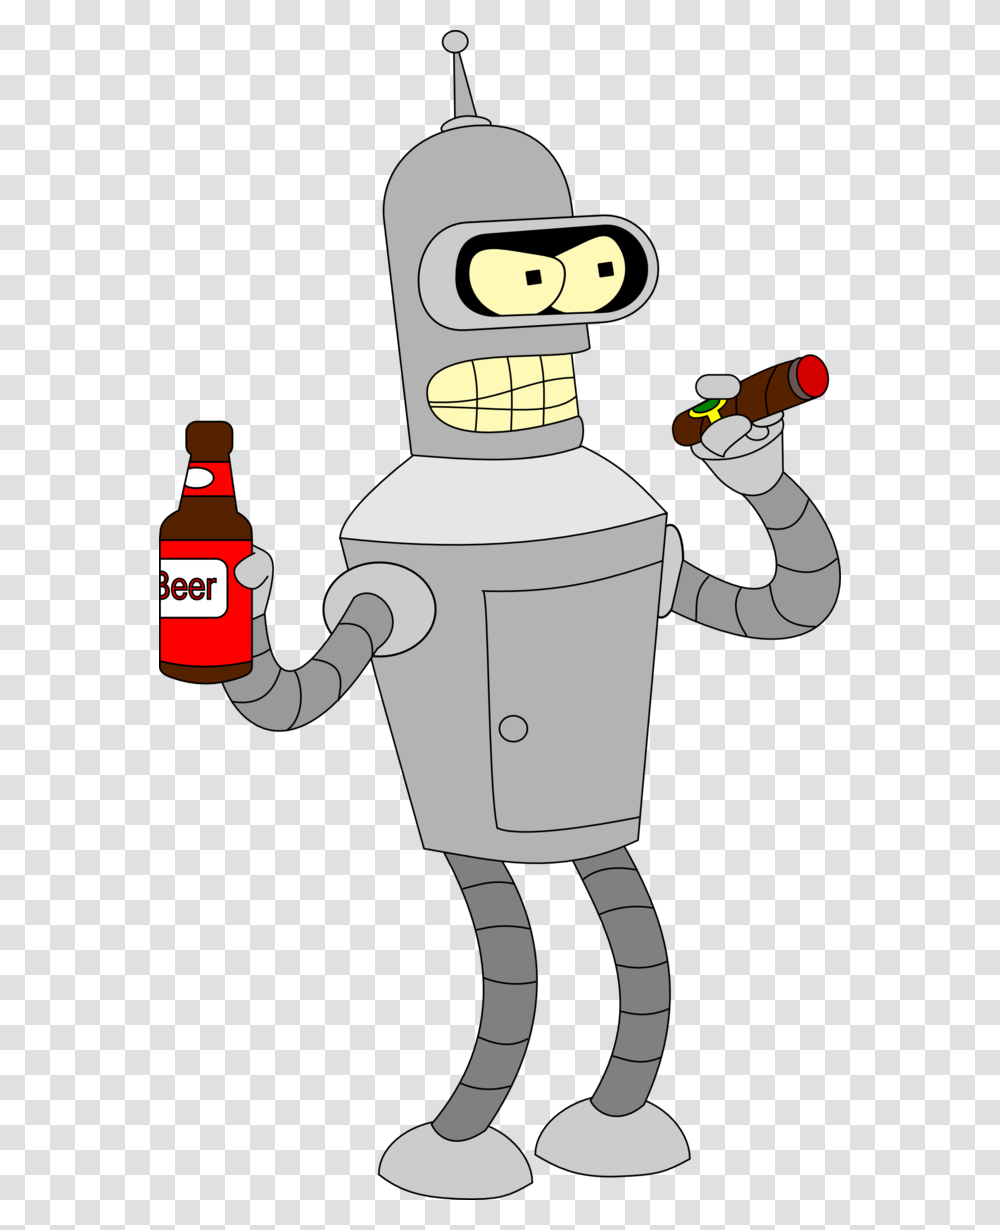 Image Result For Bender Rodriguez Cartoons, Beverage, Drink, Robot, Bottle Transparent Png